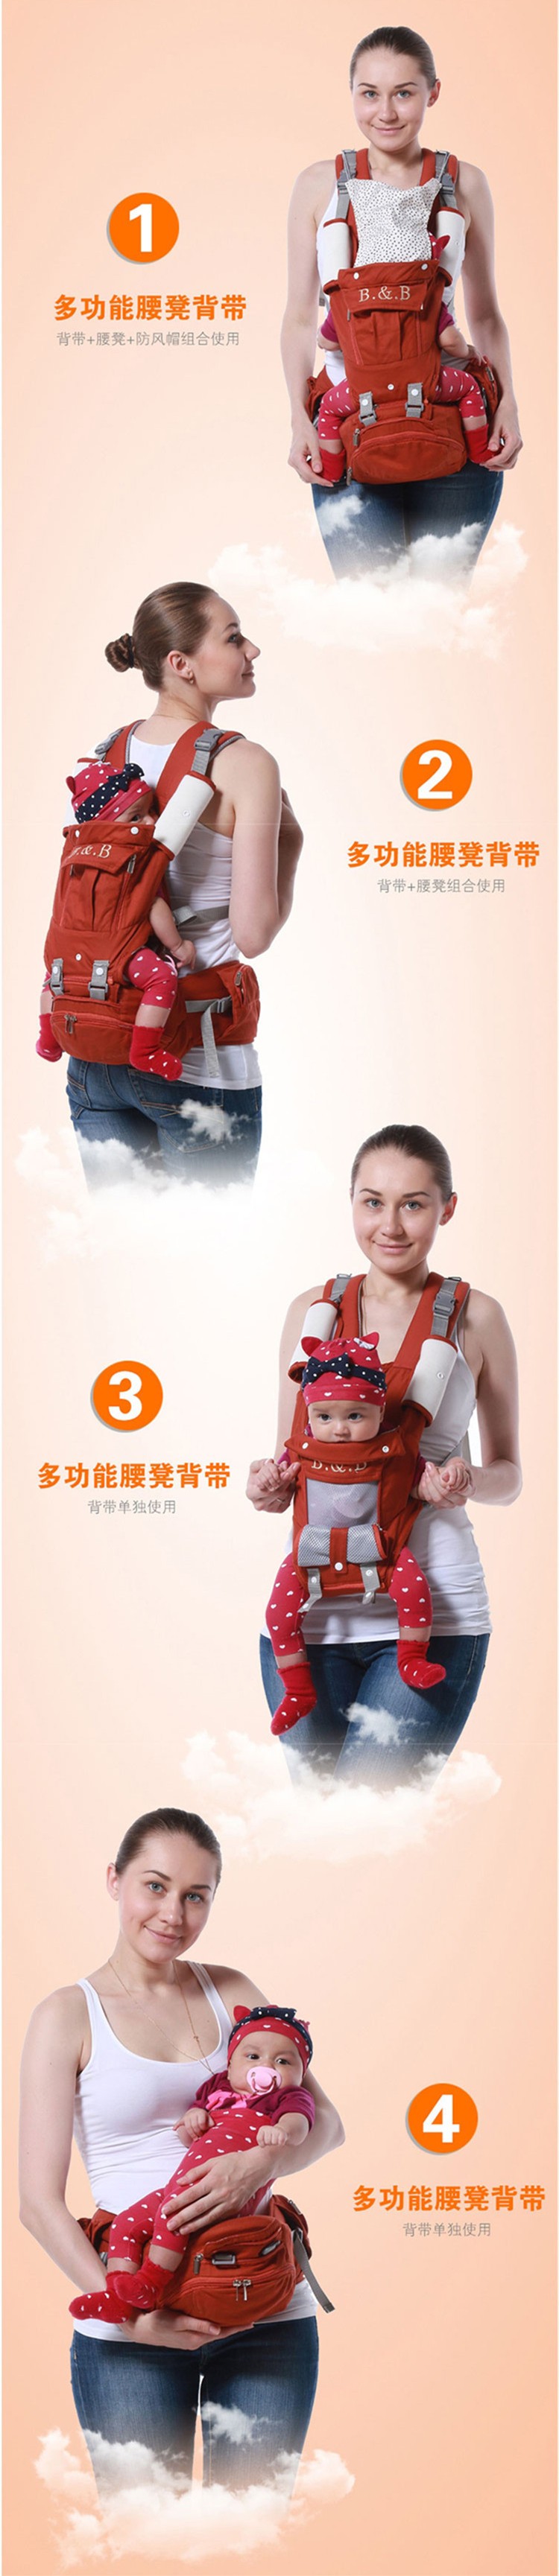 Baby Suspenders (4)